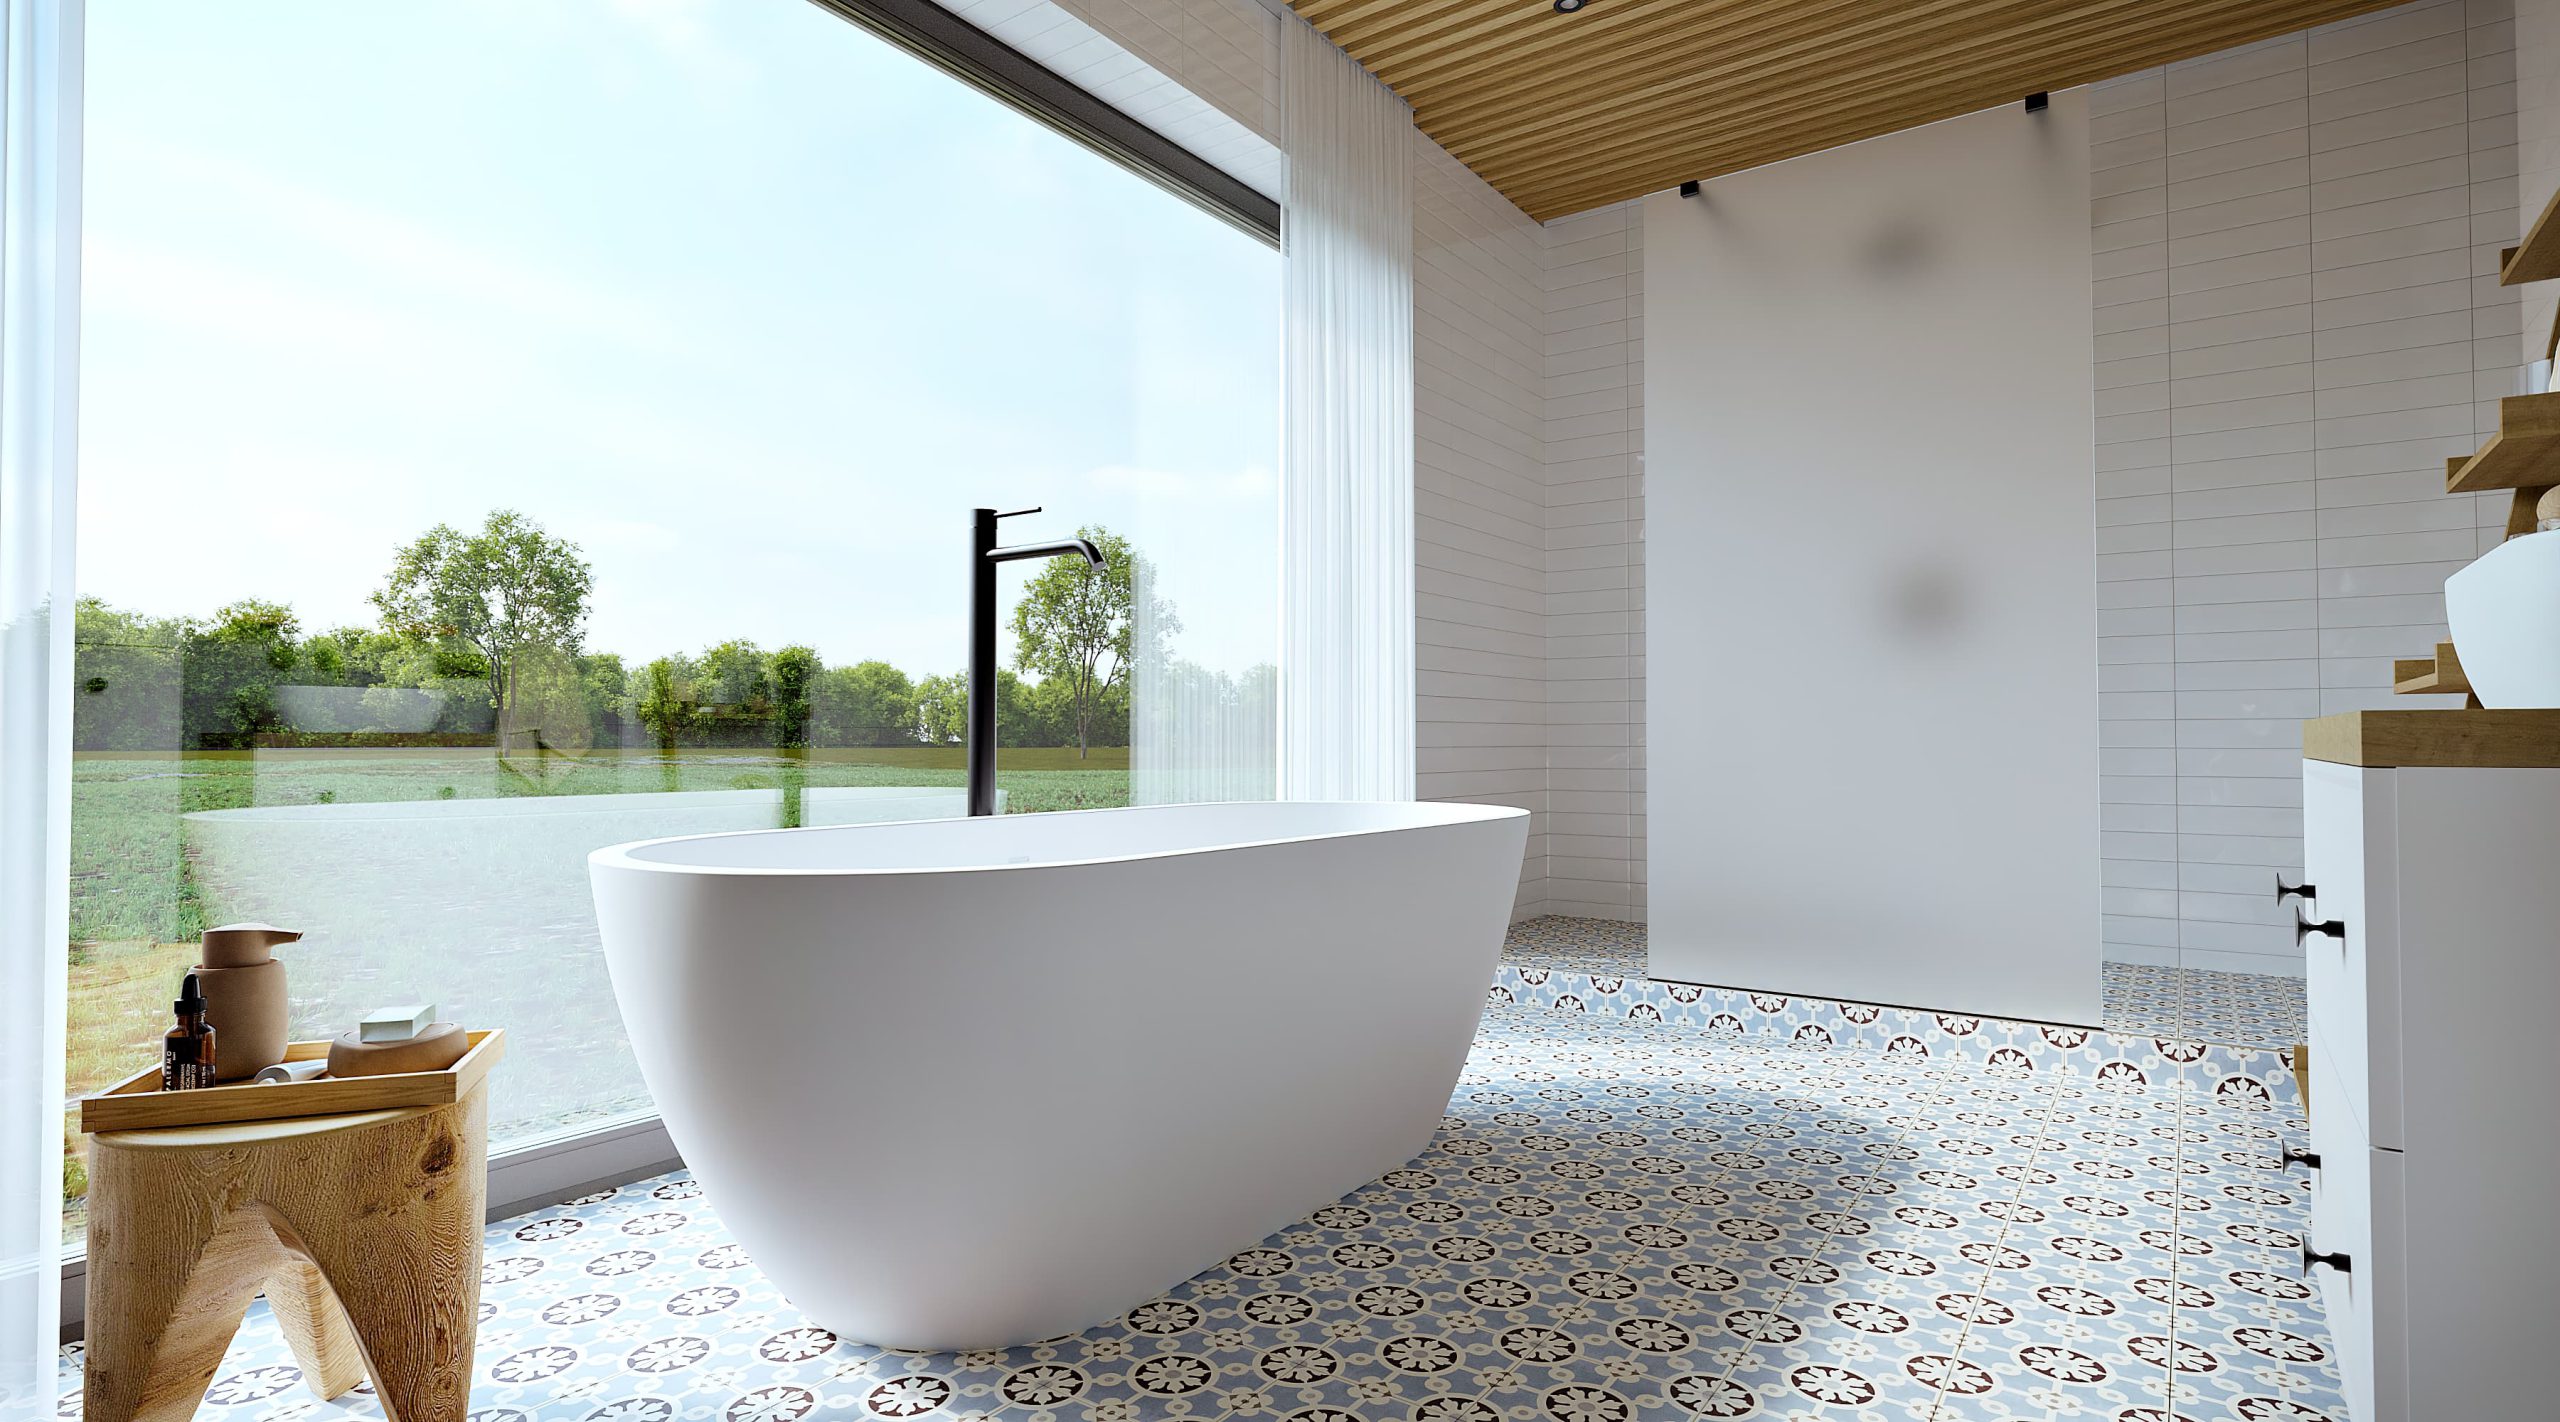 SIKO Volně stojící vana ve skandinávsky laděné velké koupelně se sprchovým koutem, vzorovaná dlažba, masivní stolička, bílý koupelnový nábytek